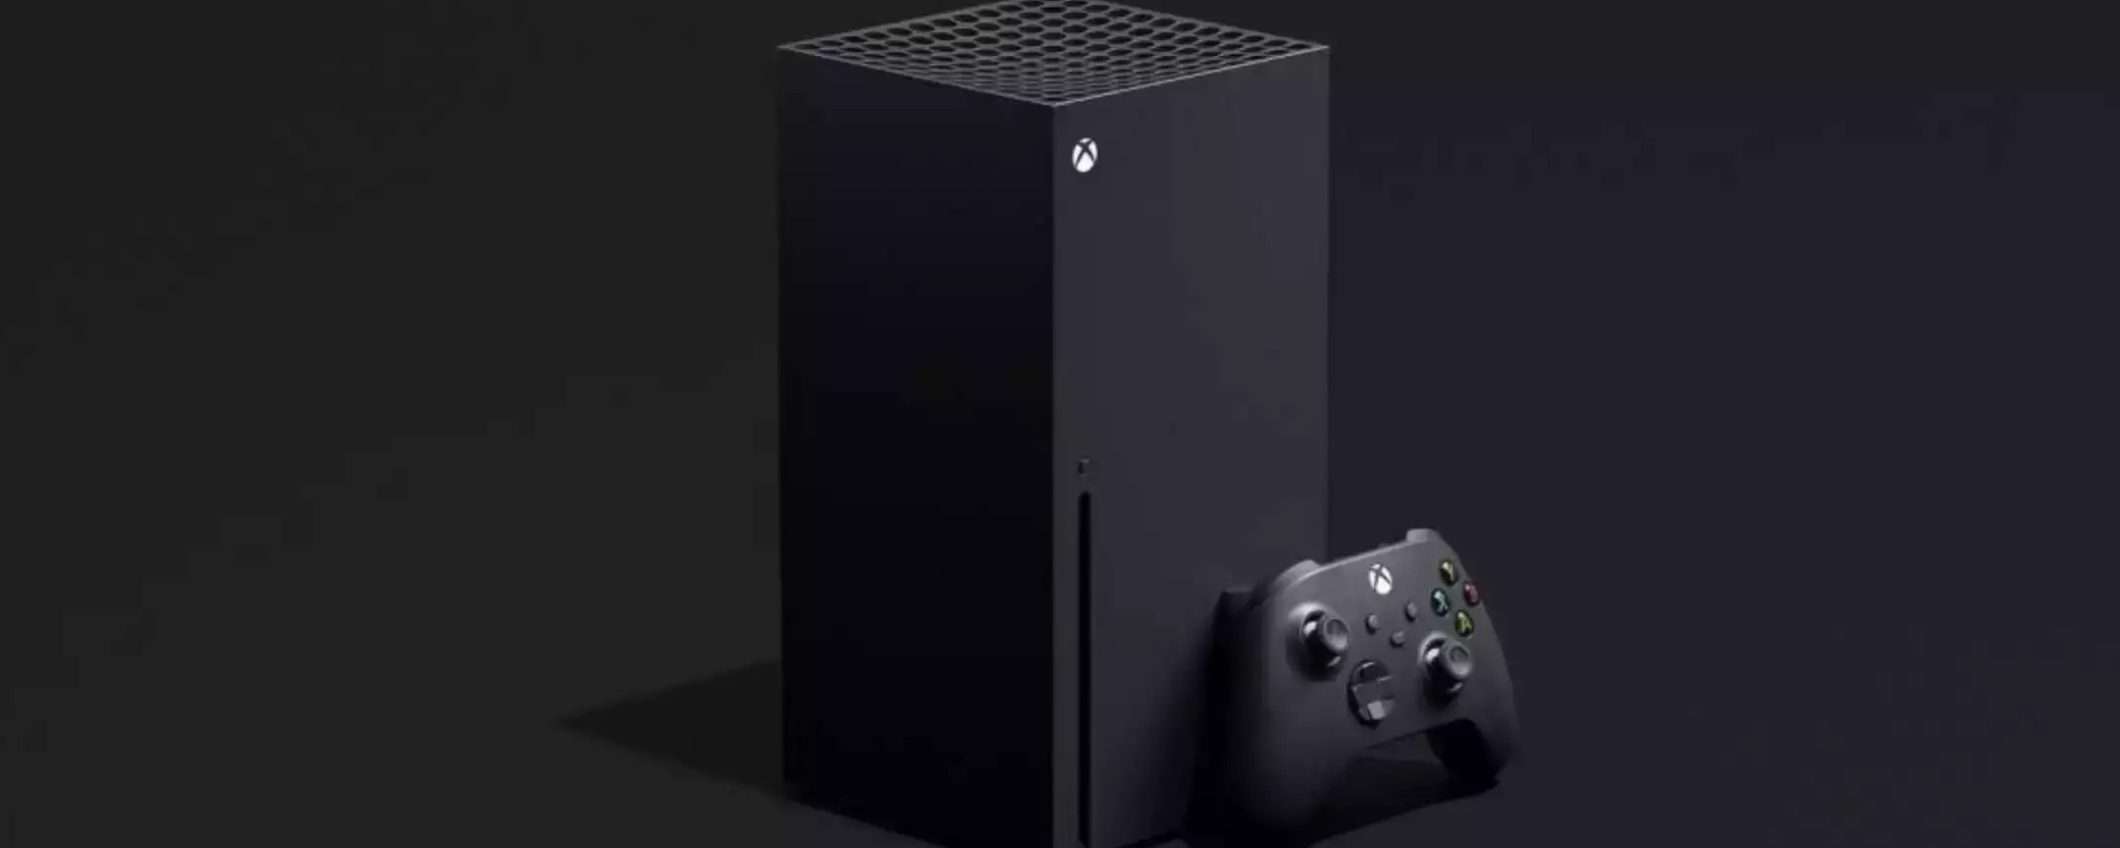 Xbox Series X è in offerta: il prezzo cala a 394€ | BEST BUY